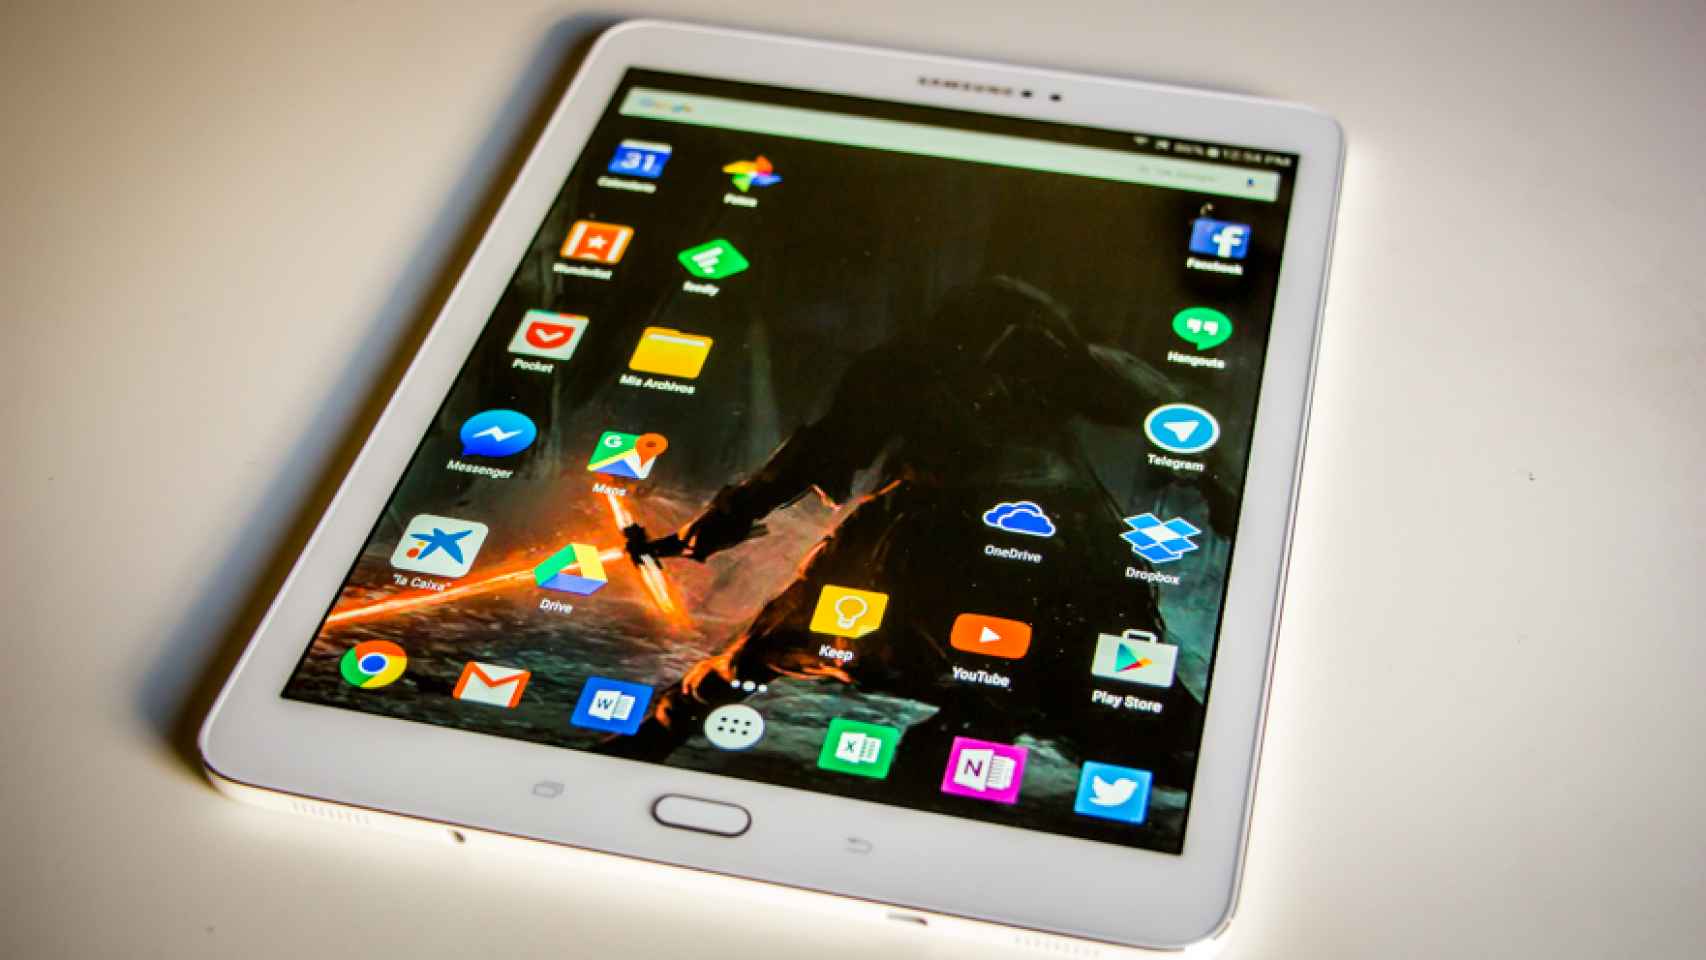 Samsung Galaxy Tab S2: Análisis y experiencia de uso